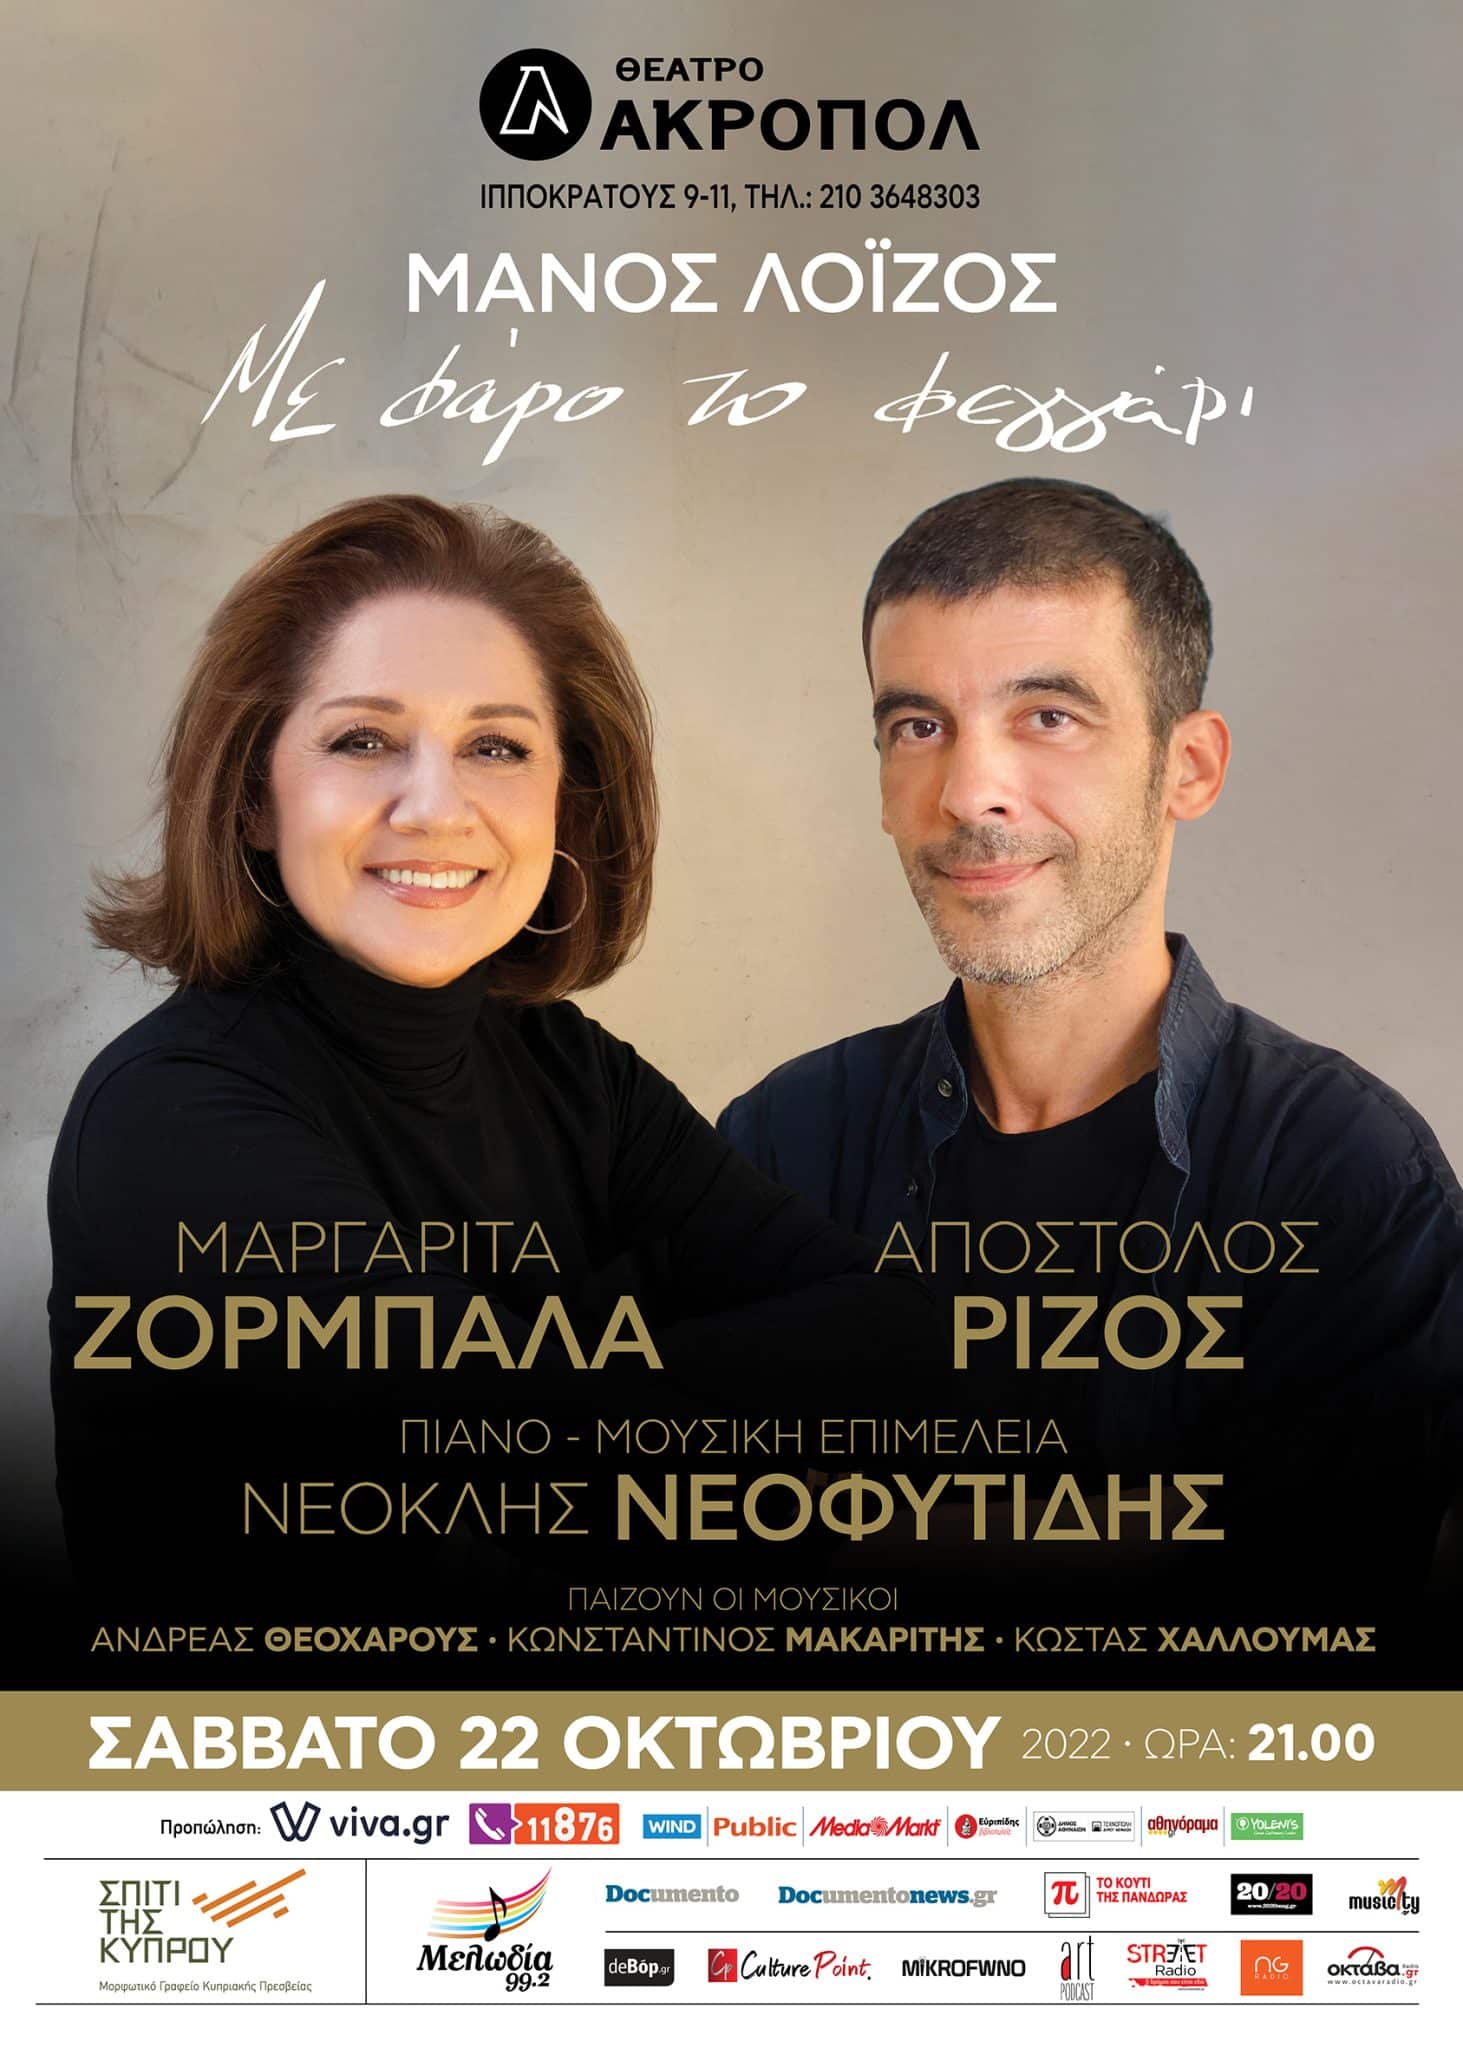 Η Μαργαρίτα Ζορμπαλά και ο Απόστολος Ρίζος τραγουδούν Μάνο Λοΐζο στο θέατρο Ακροπόλ το Σάββατο 22 Οκτωβρίου